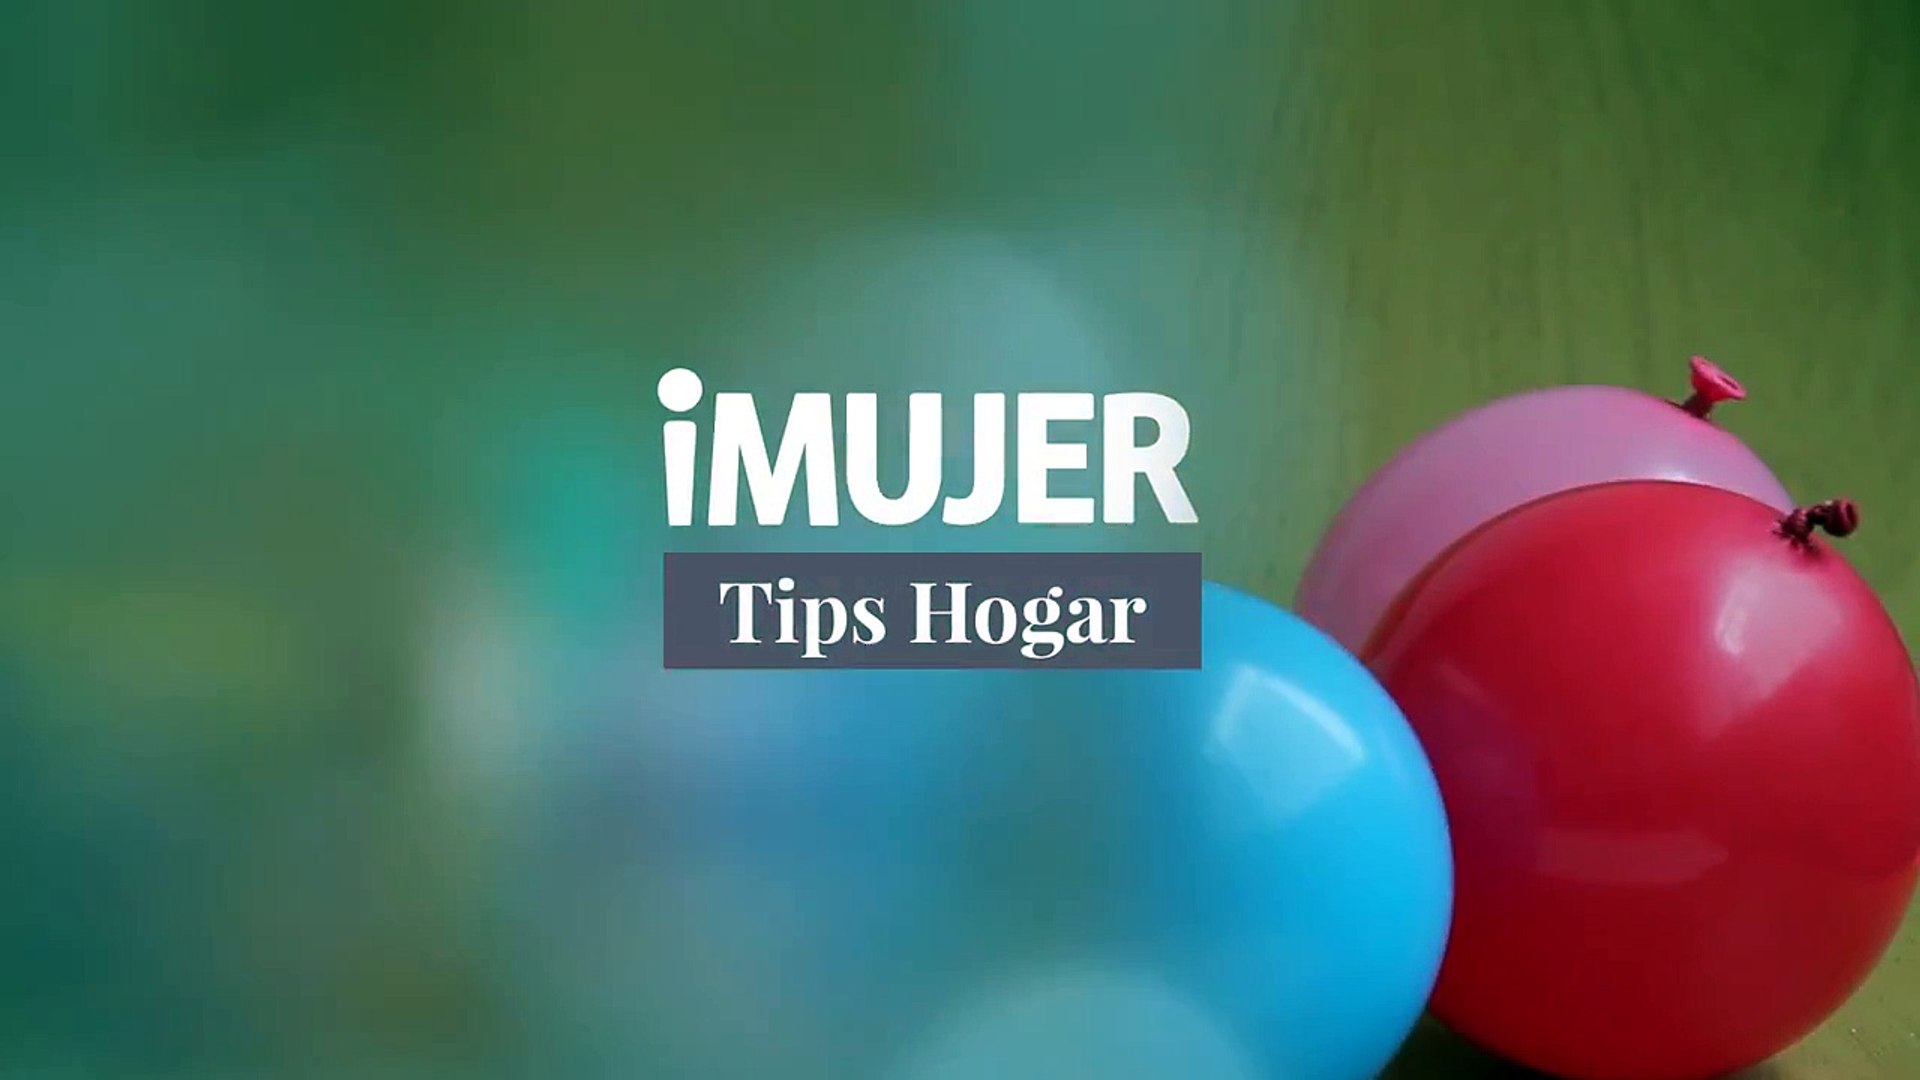 Tips Hogar: afloja tornillos con agua oxigenada | TRUCOS PARA EL HOGAR |  @iMujerHogar - video Dailymotion